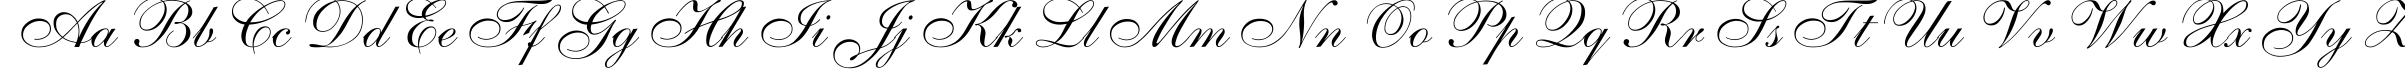 Пример написания английского алфавита шрифтом Allegro